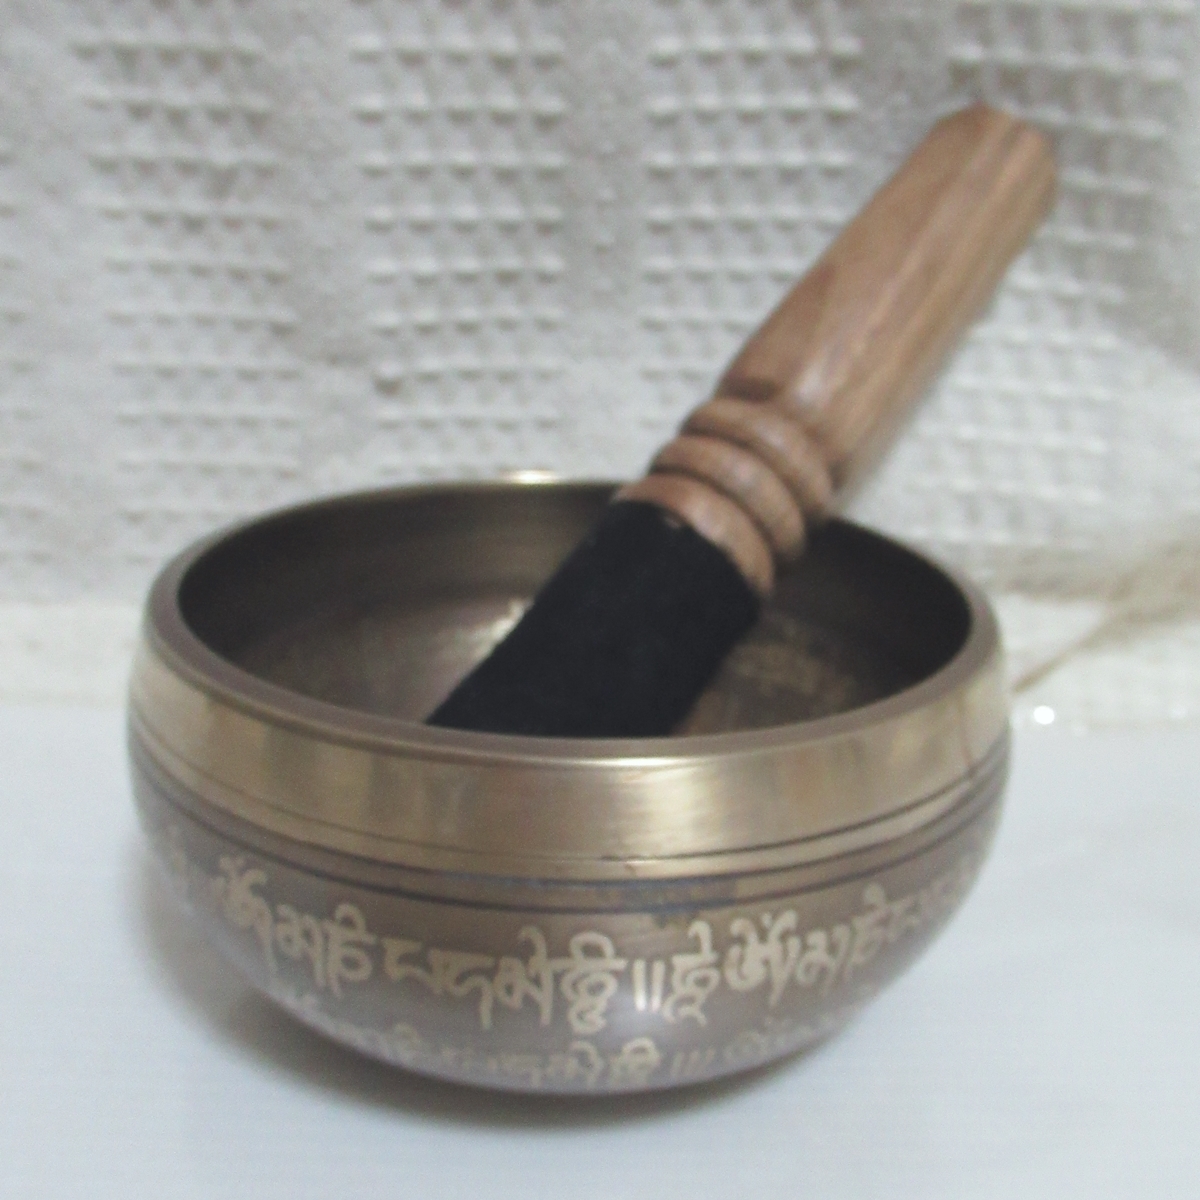 sin silver g bowl (katsuma) 434g healing tea kla bowl .. law .